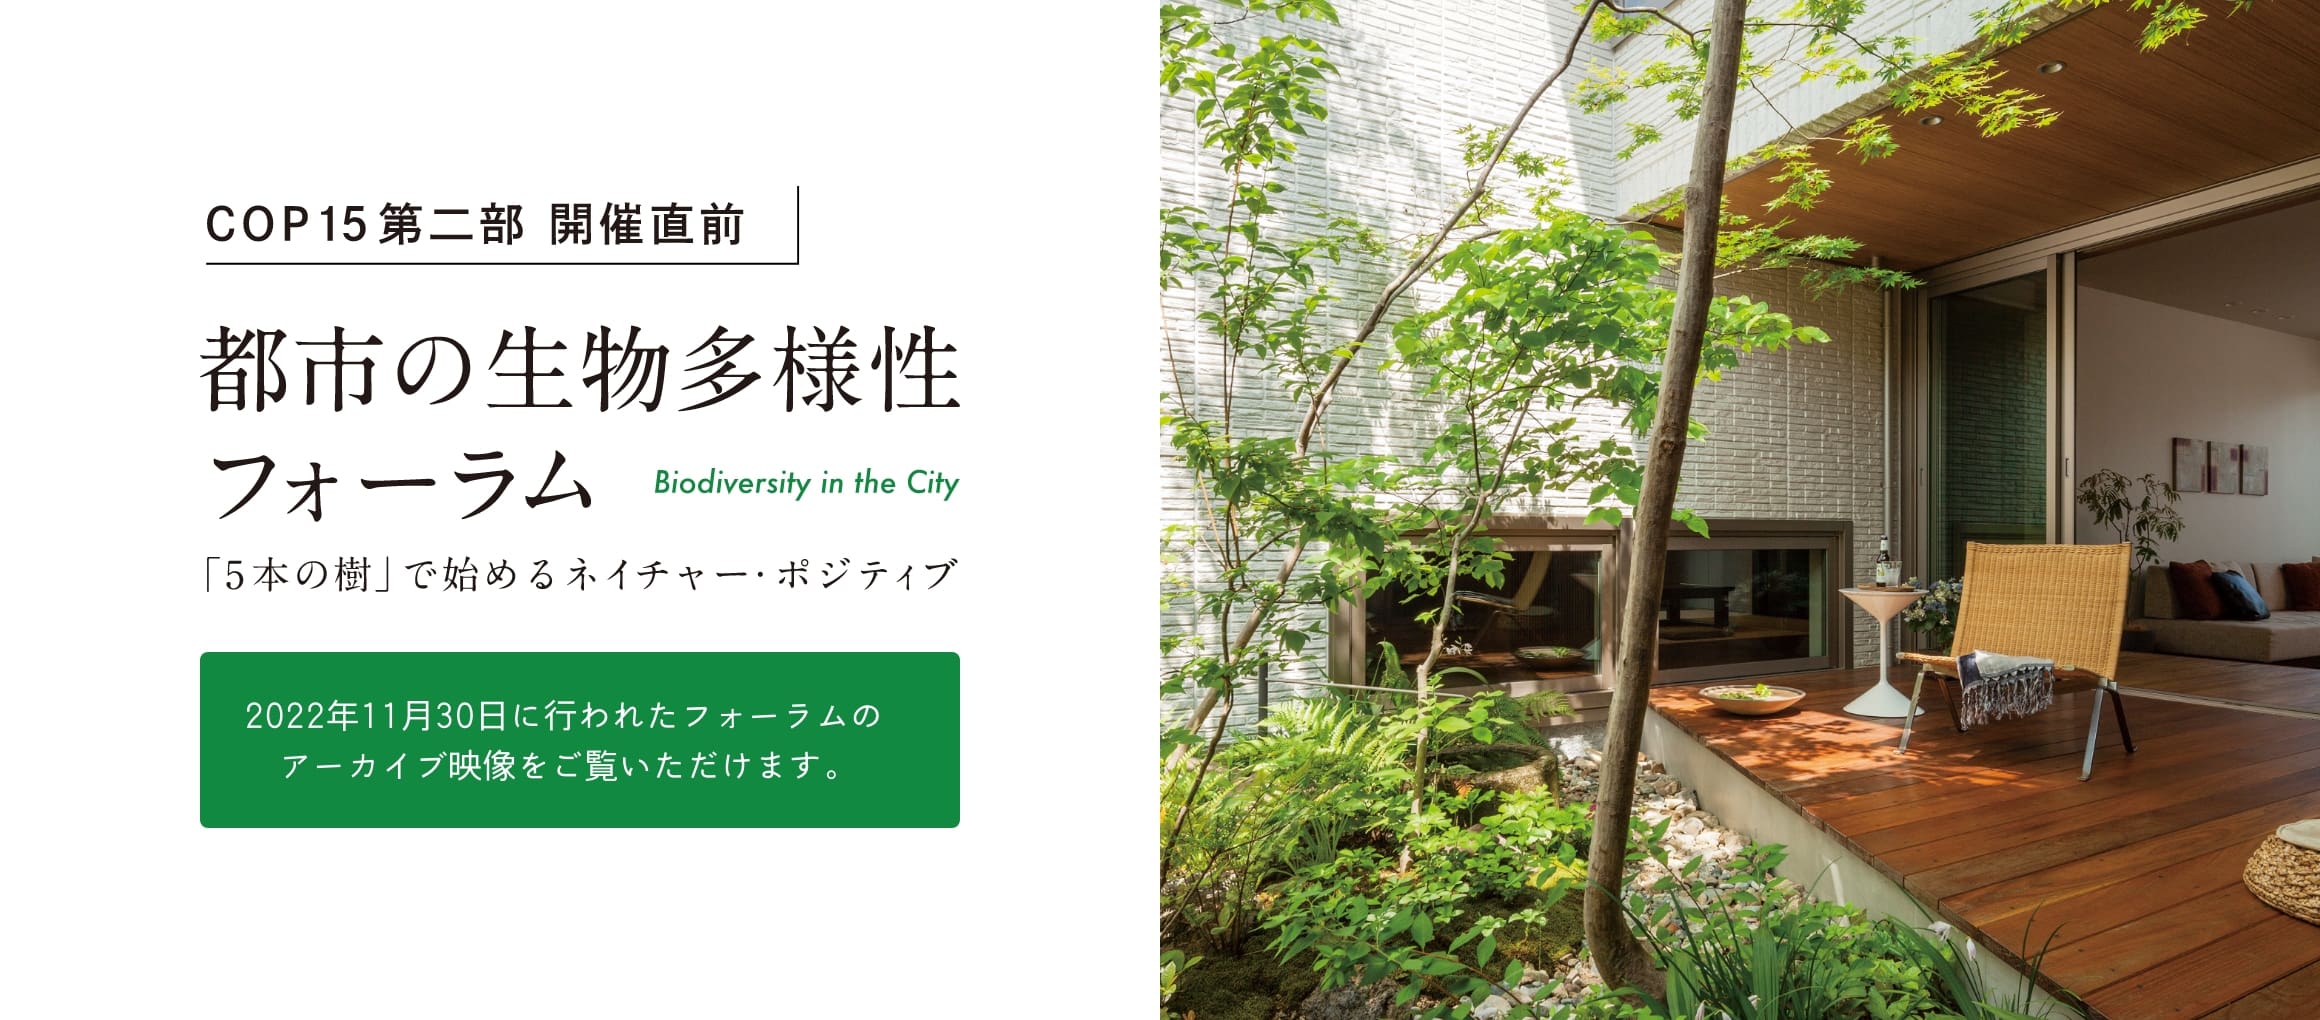 COP15第二部 開催直前 都市の生物多様性フォーラム
                     Biodiversity in the City　「５本の樹」計画でネイチャー・ポジティブ
                     　2022年11月30日に行われたフォーラムのアーカイブ映像をご覧いただけます。